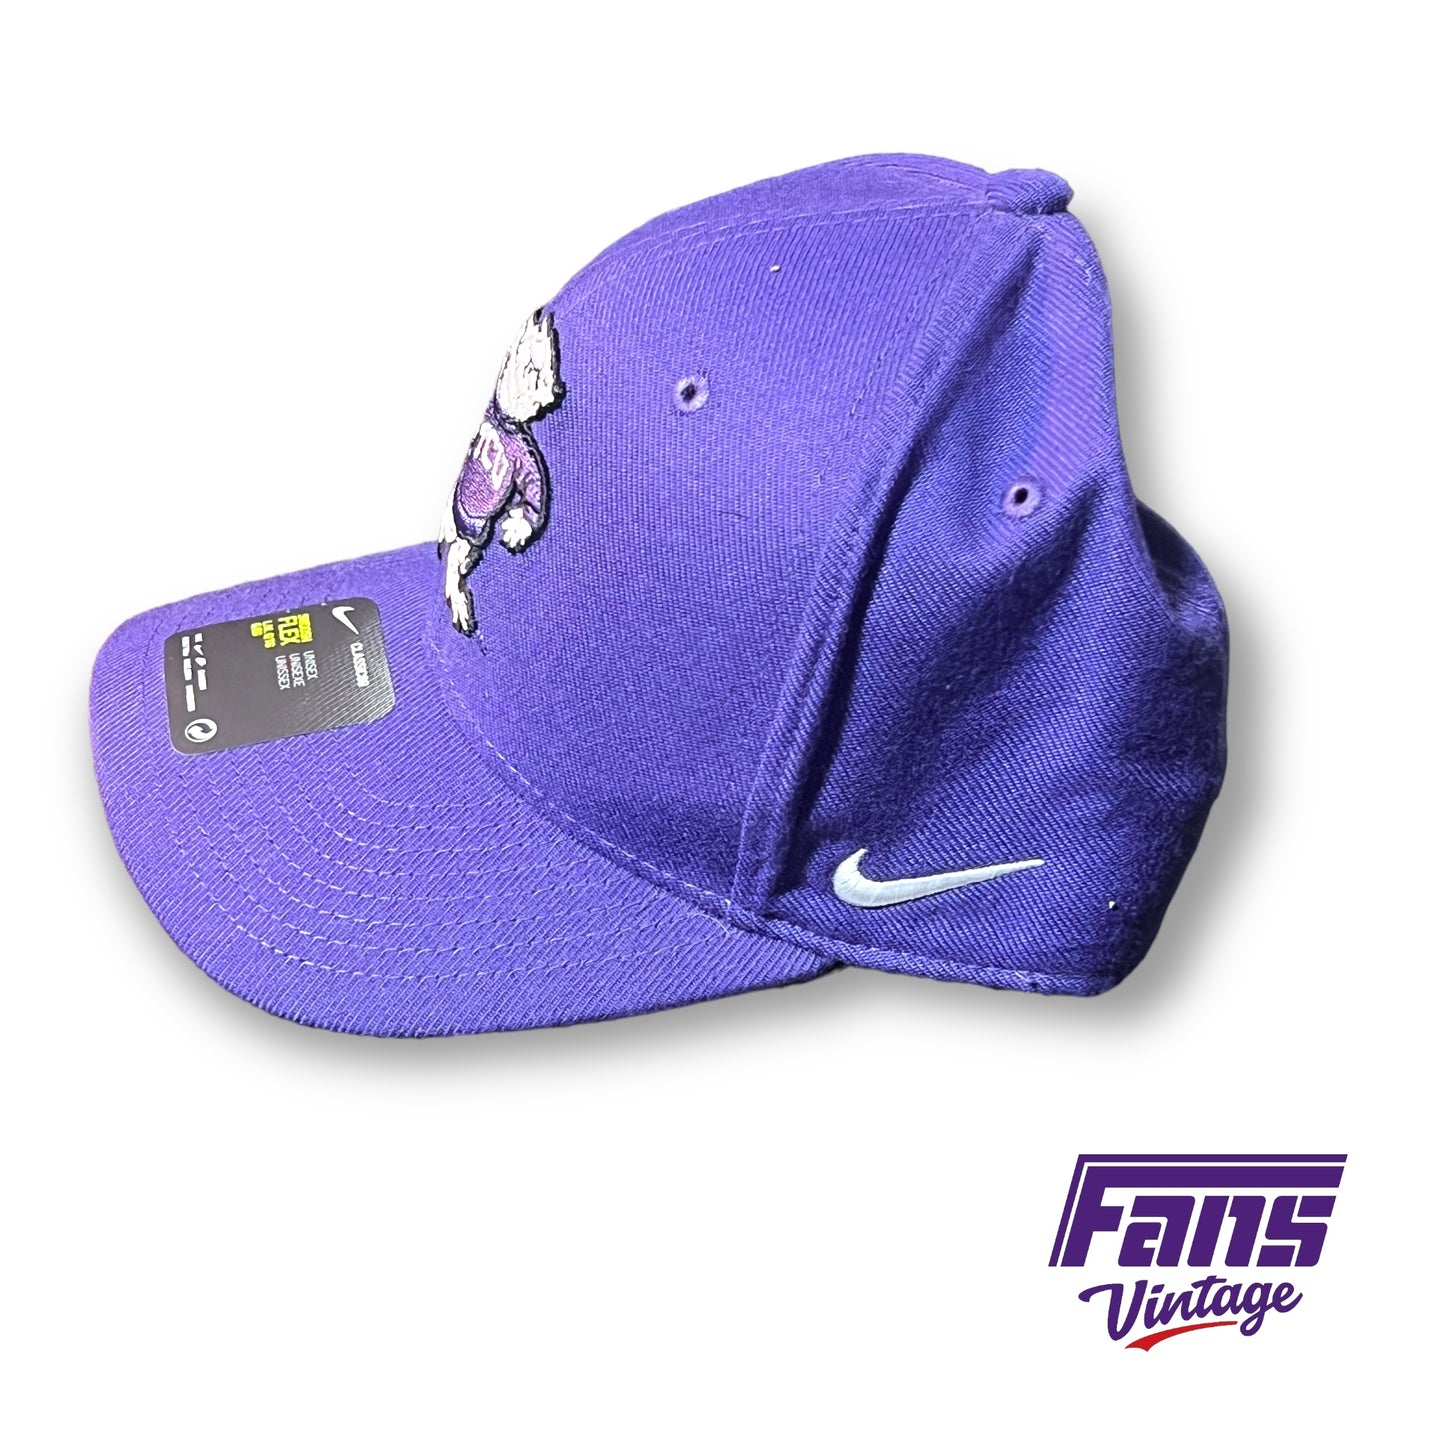 TCU Nike Vintage Throwback “Sweater Frog” Hat